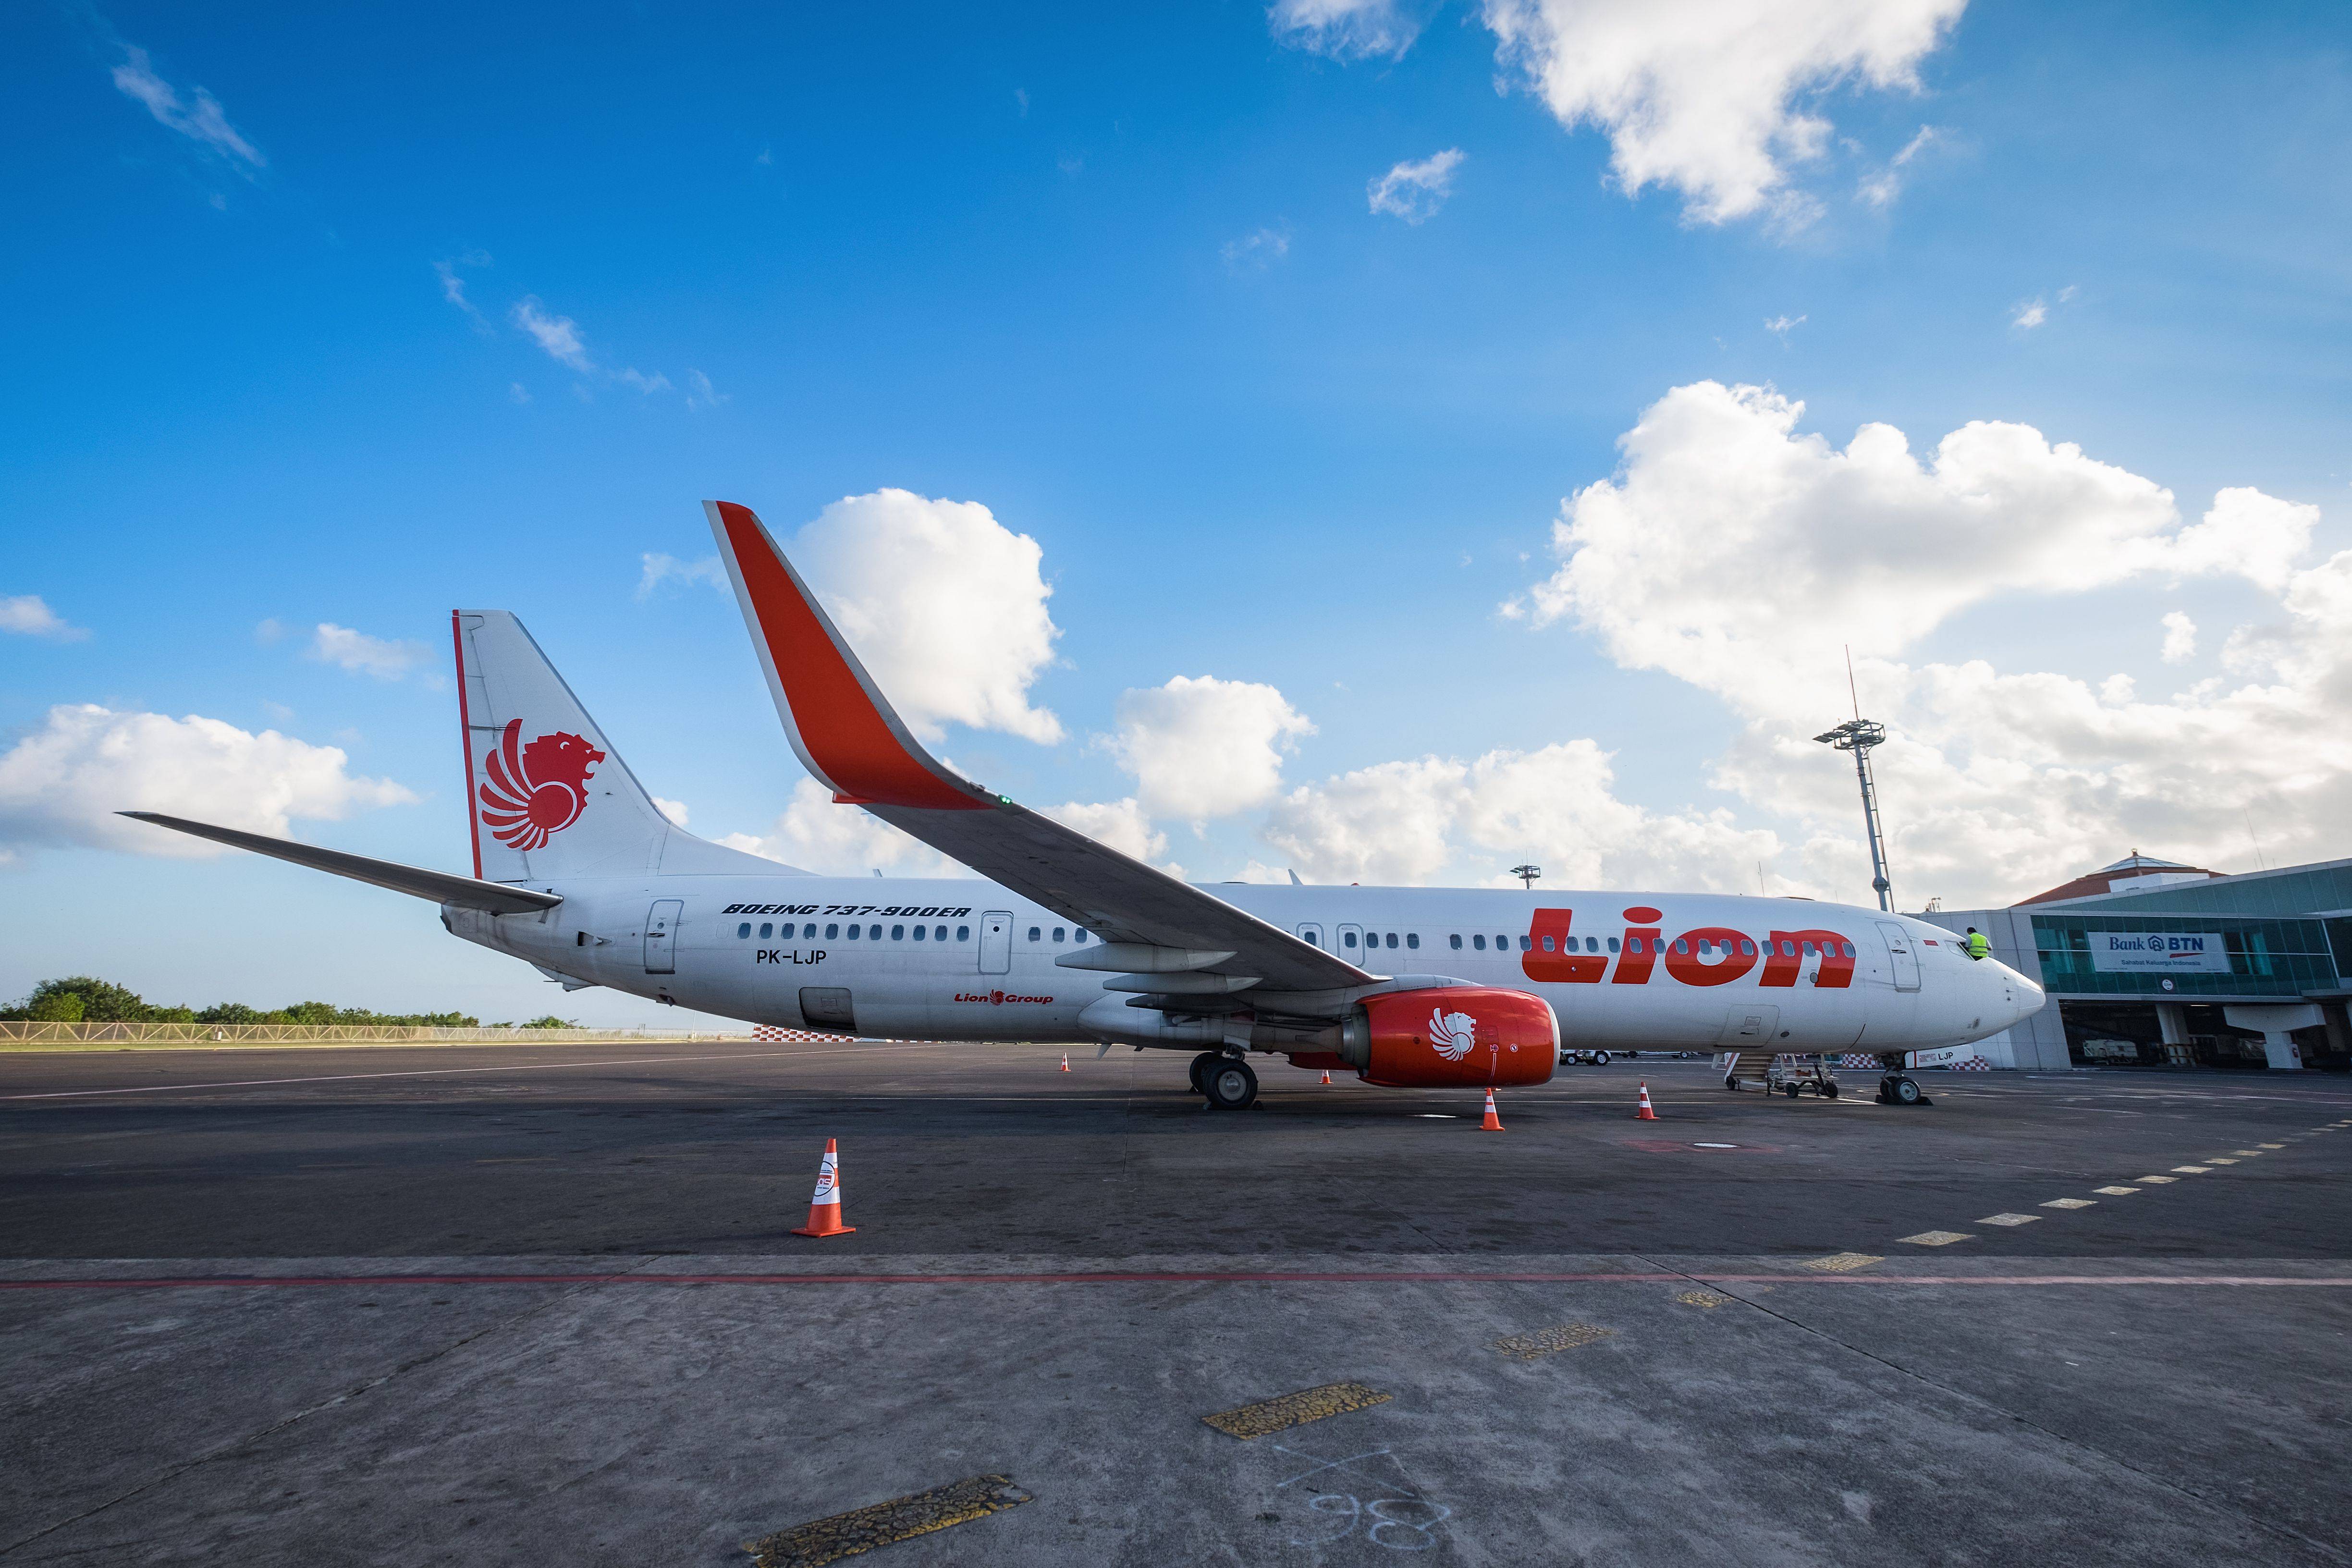 Thai lion air (тай лайон/лион эйр): обзор авиакомпании тайланда, доступные услуги и цены, провоз багажа, отзывы пассажиров